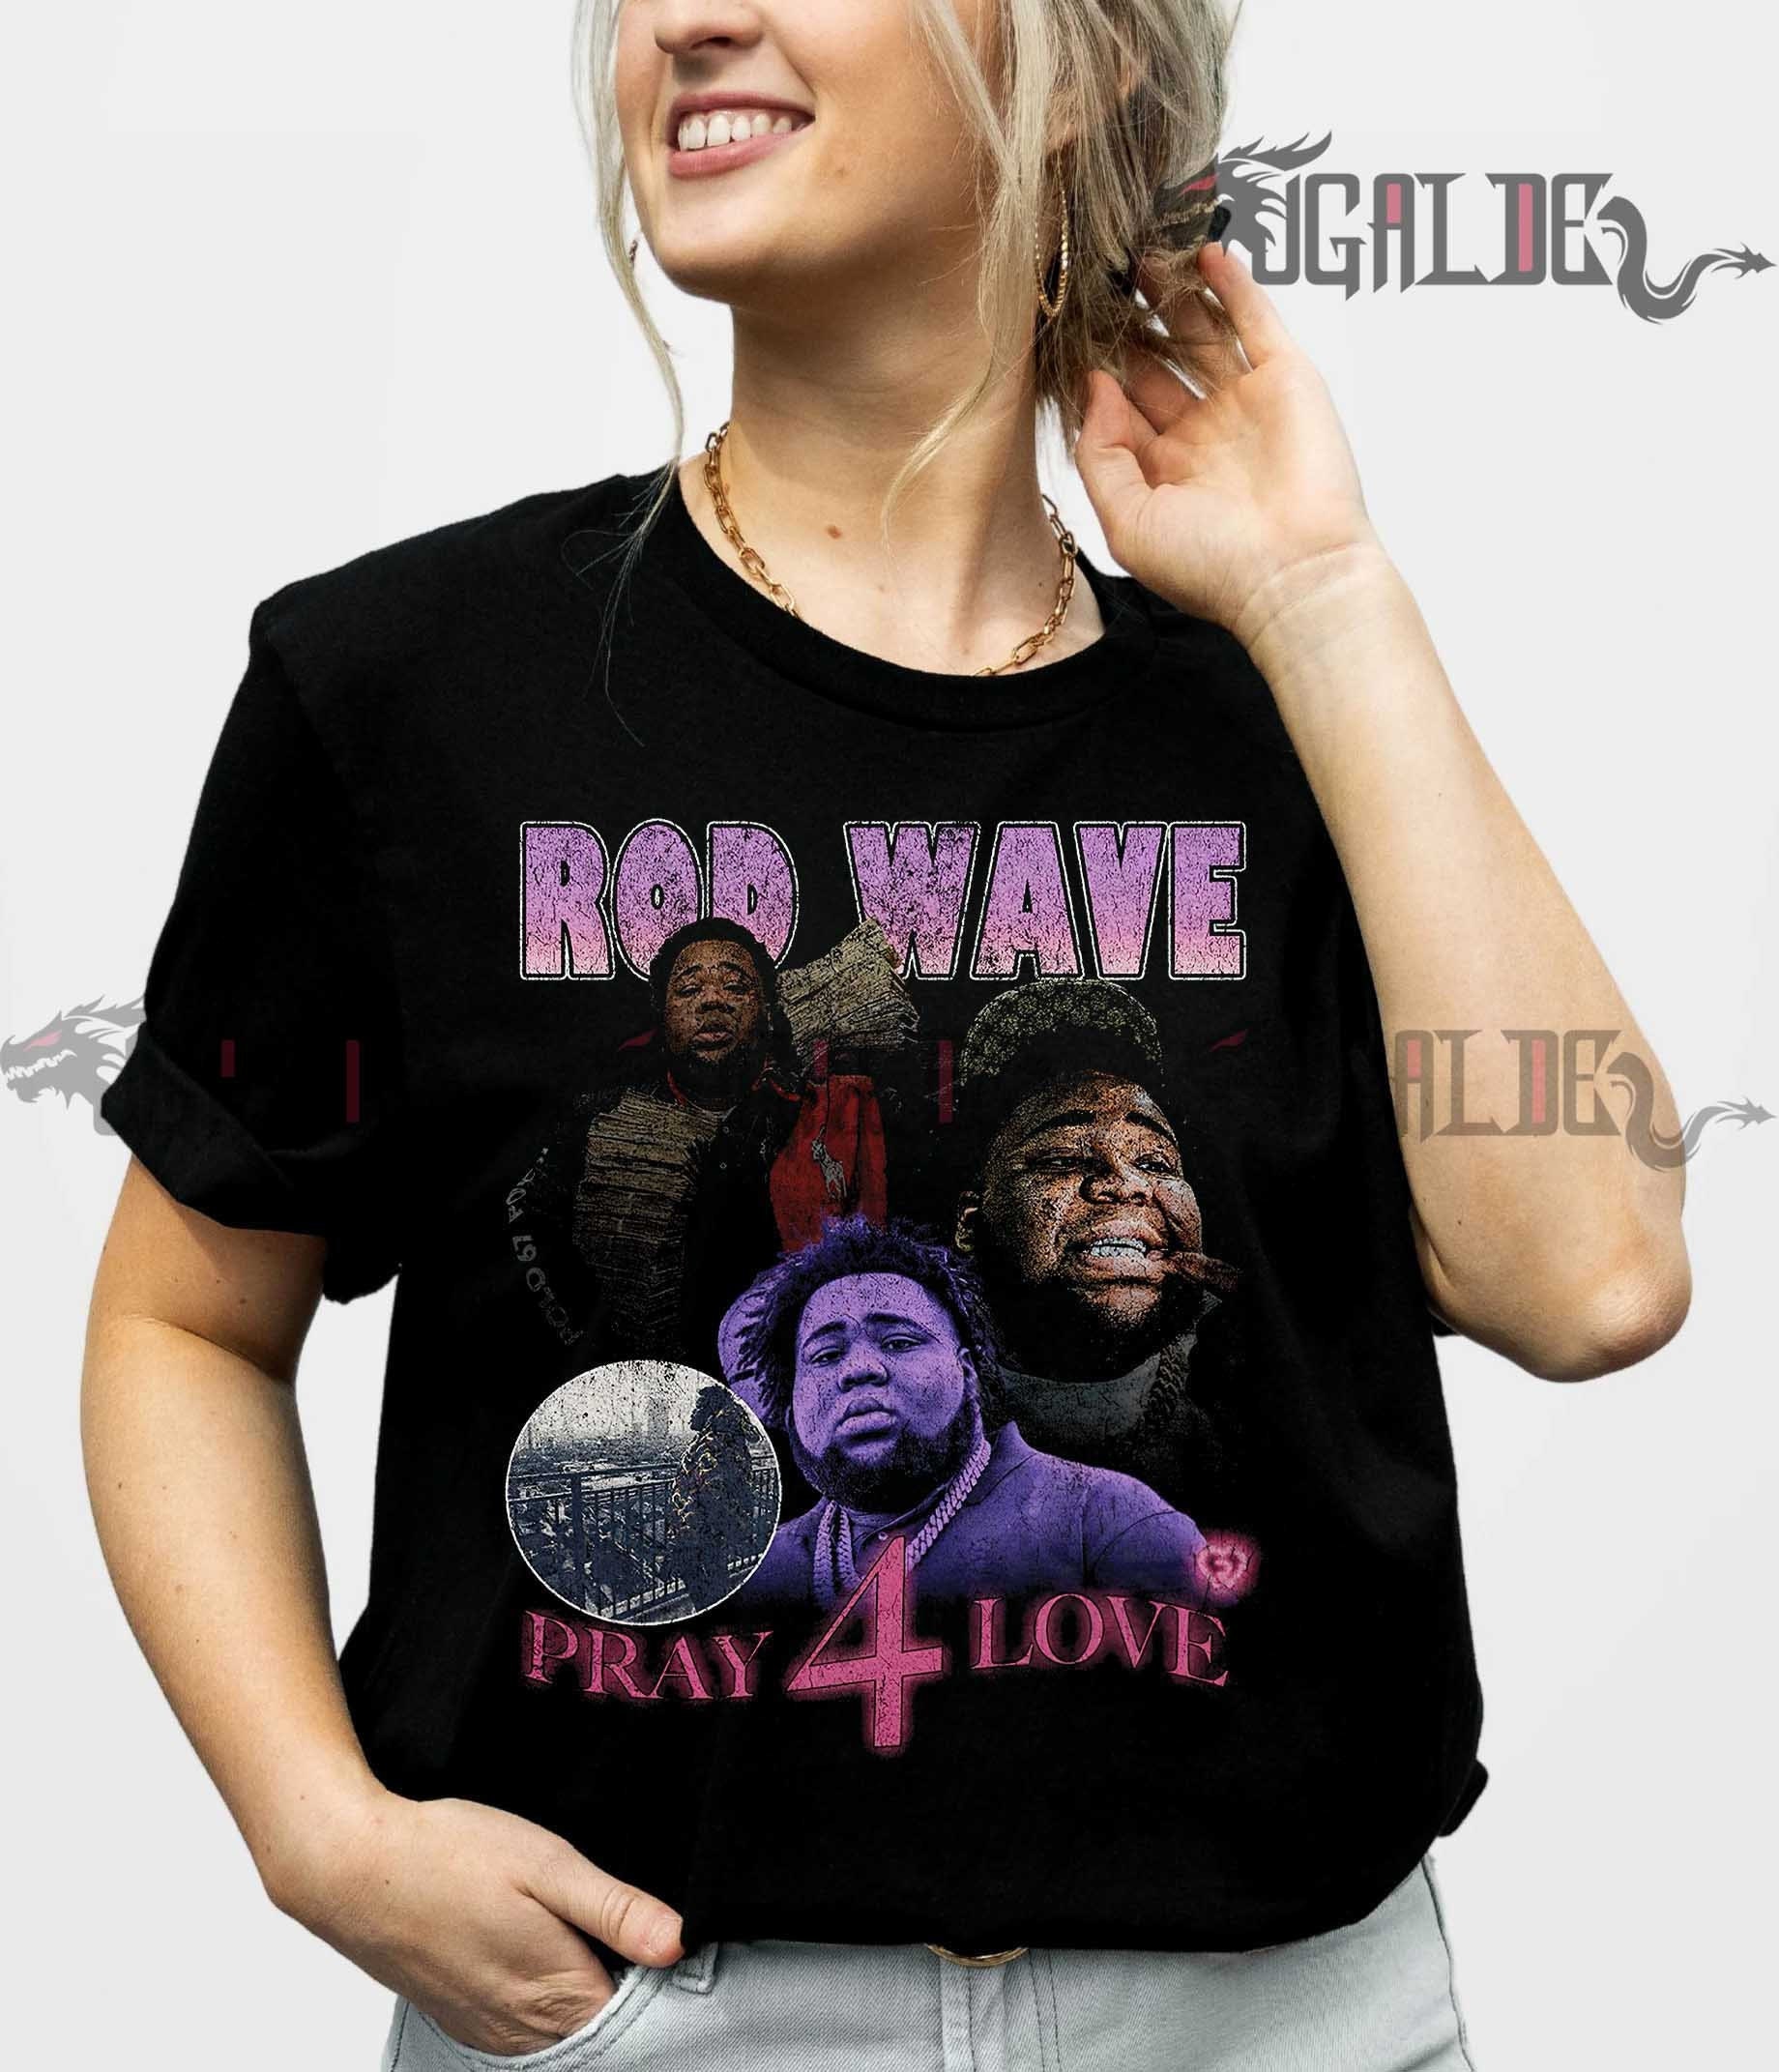 Discover Rod Wave Vintage Shirt, Pray 4 Love, Rod Wave Vintage 90s Shirt